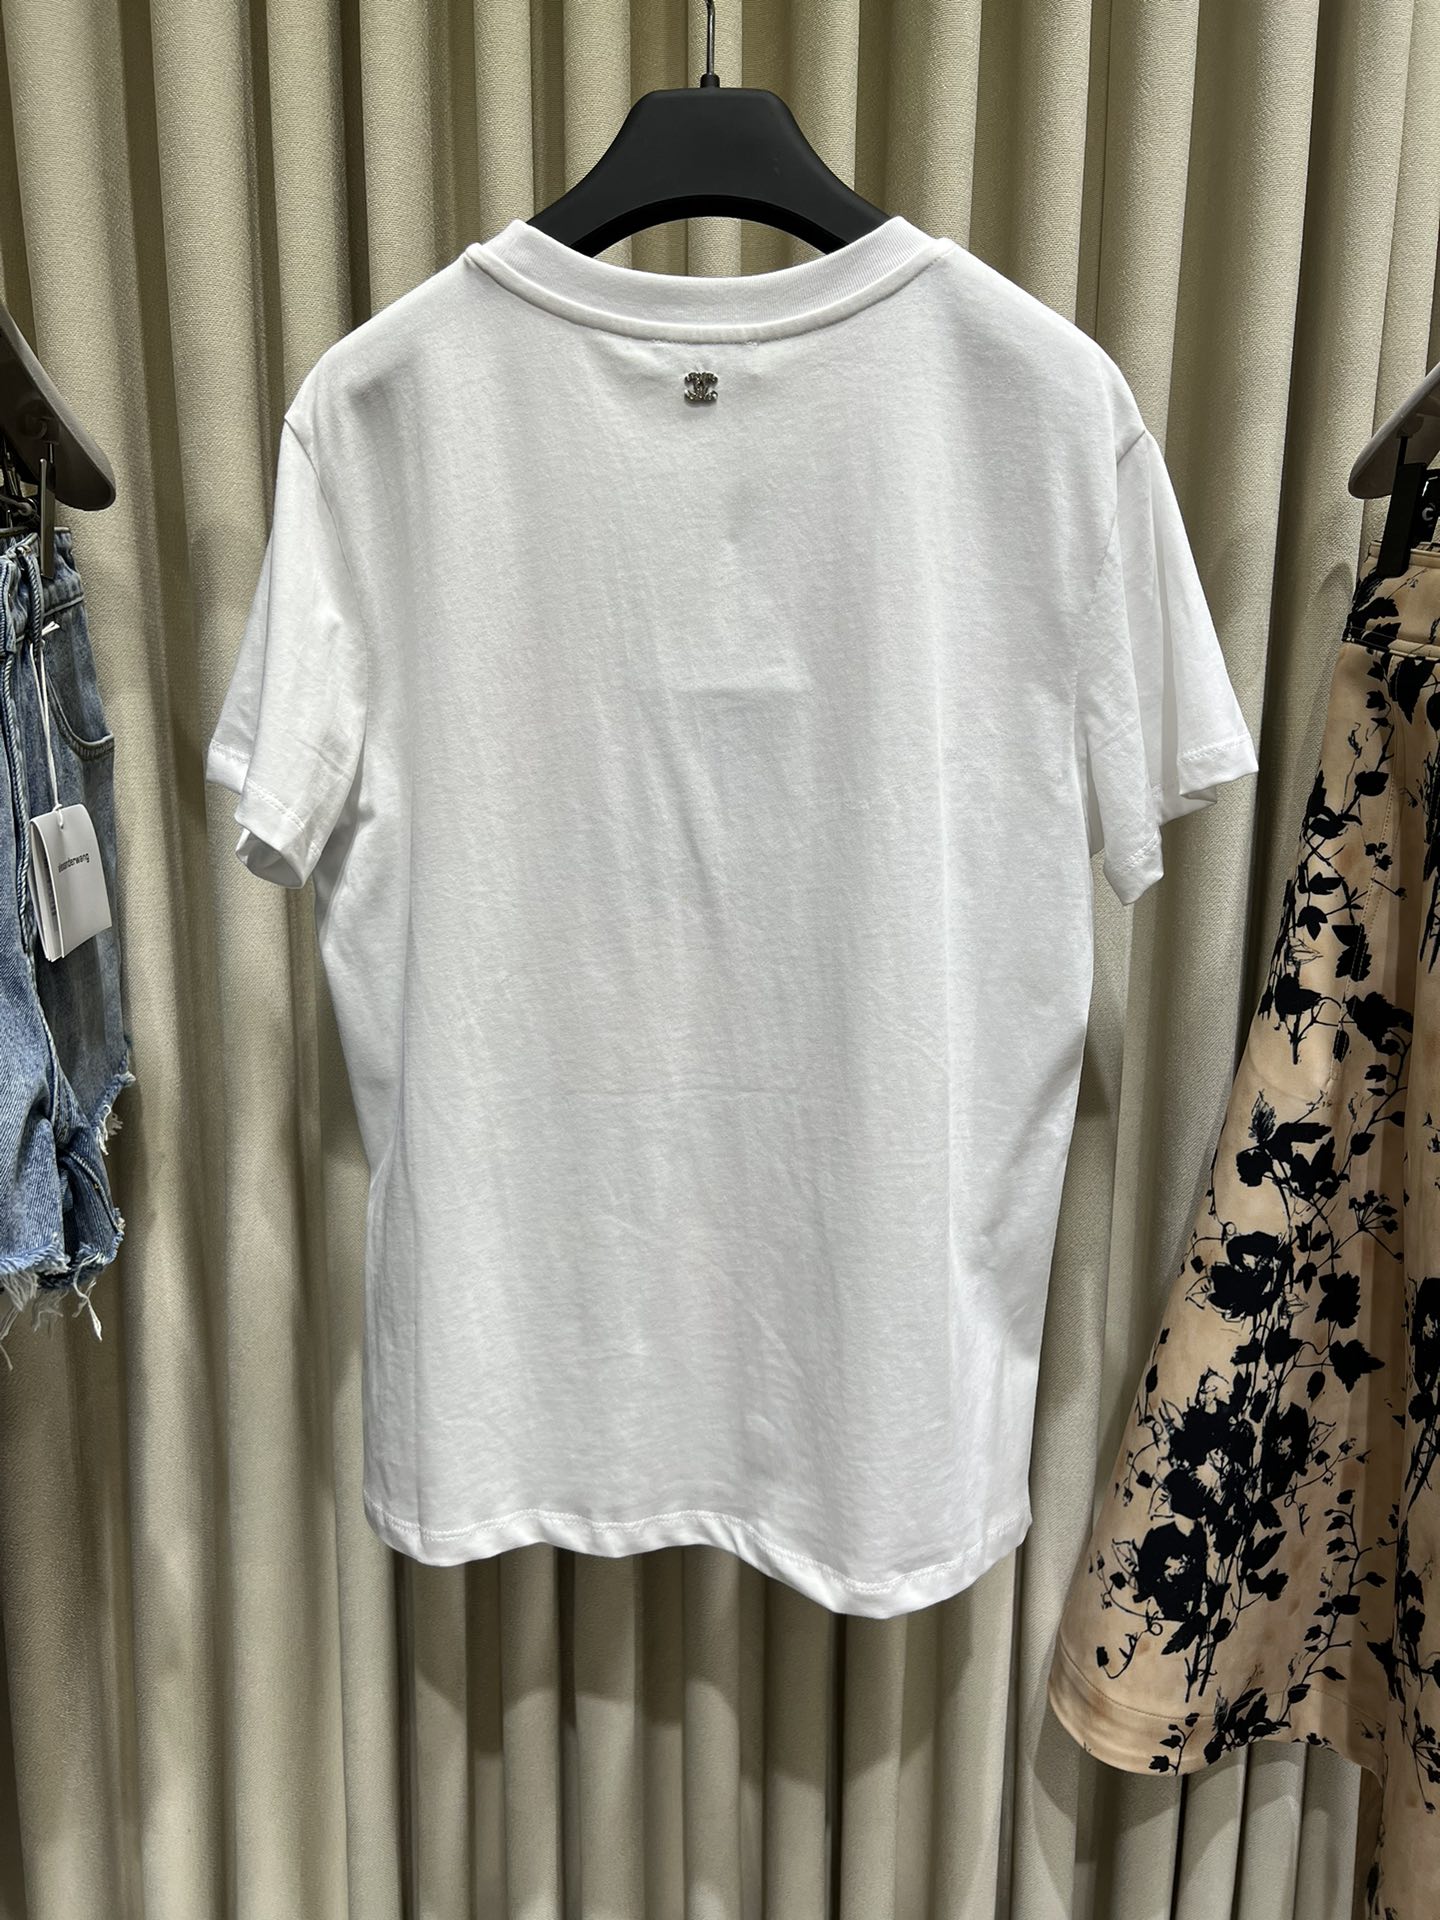 chanel メンズ t シャツ激安通販 可愛い 純綿 トップス 花プリント ファッション感 カラフルの服 ホワイト_9